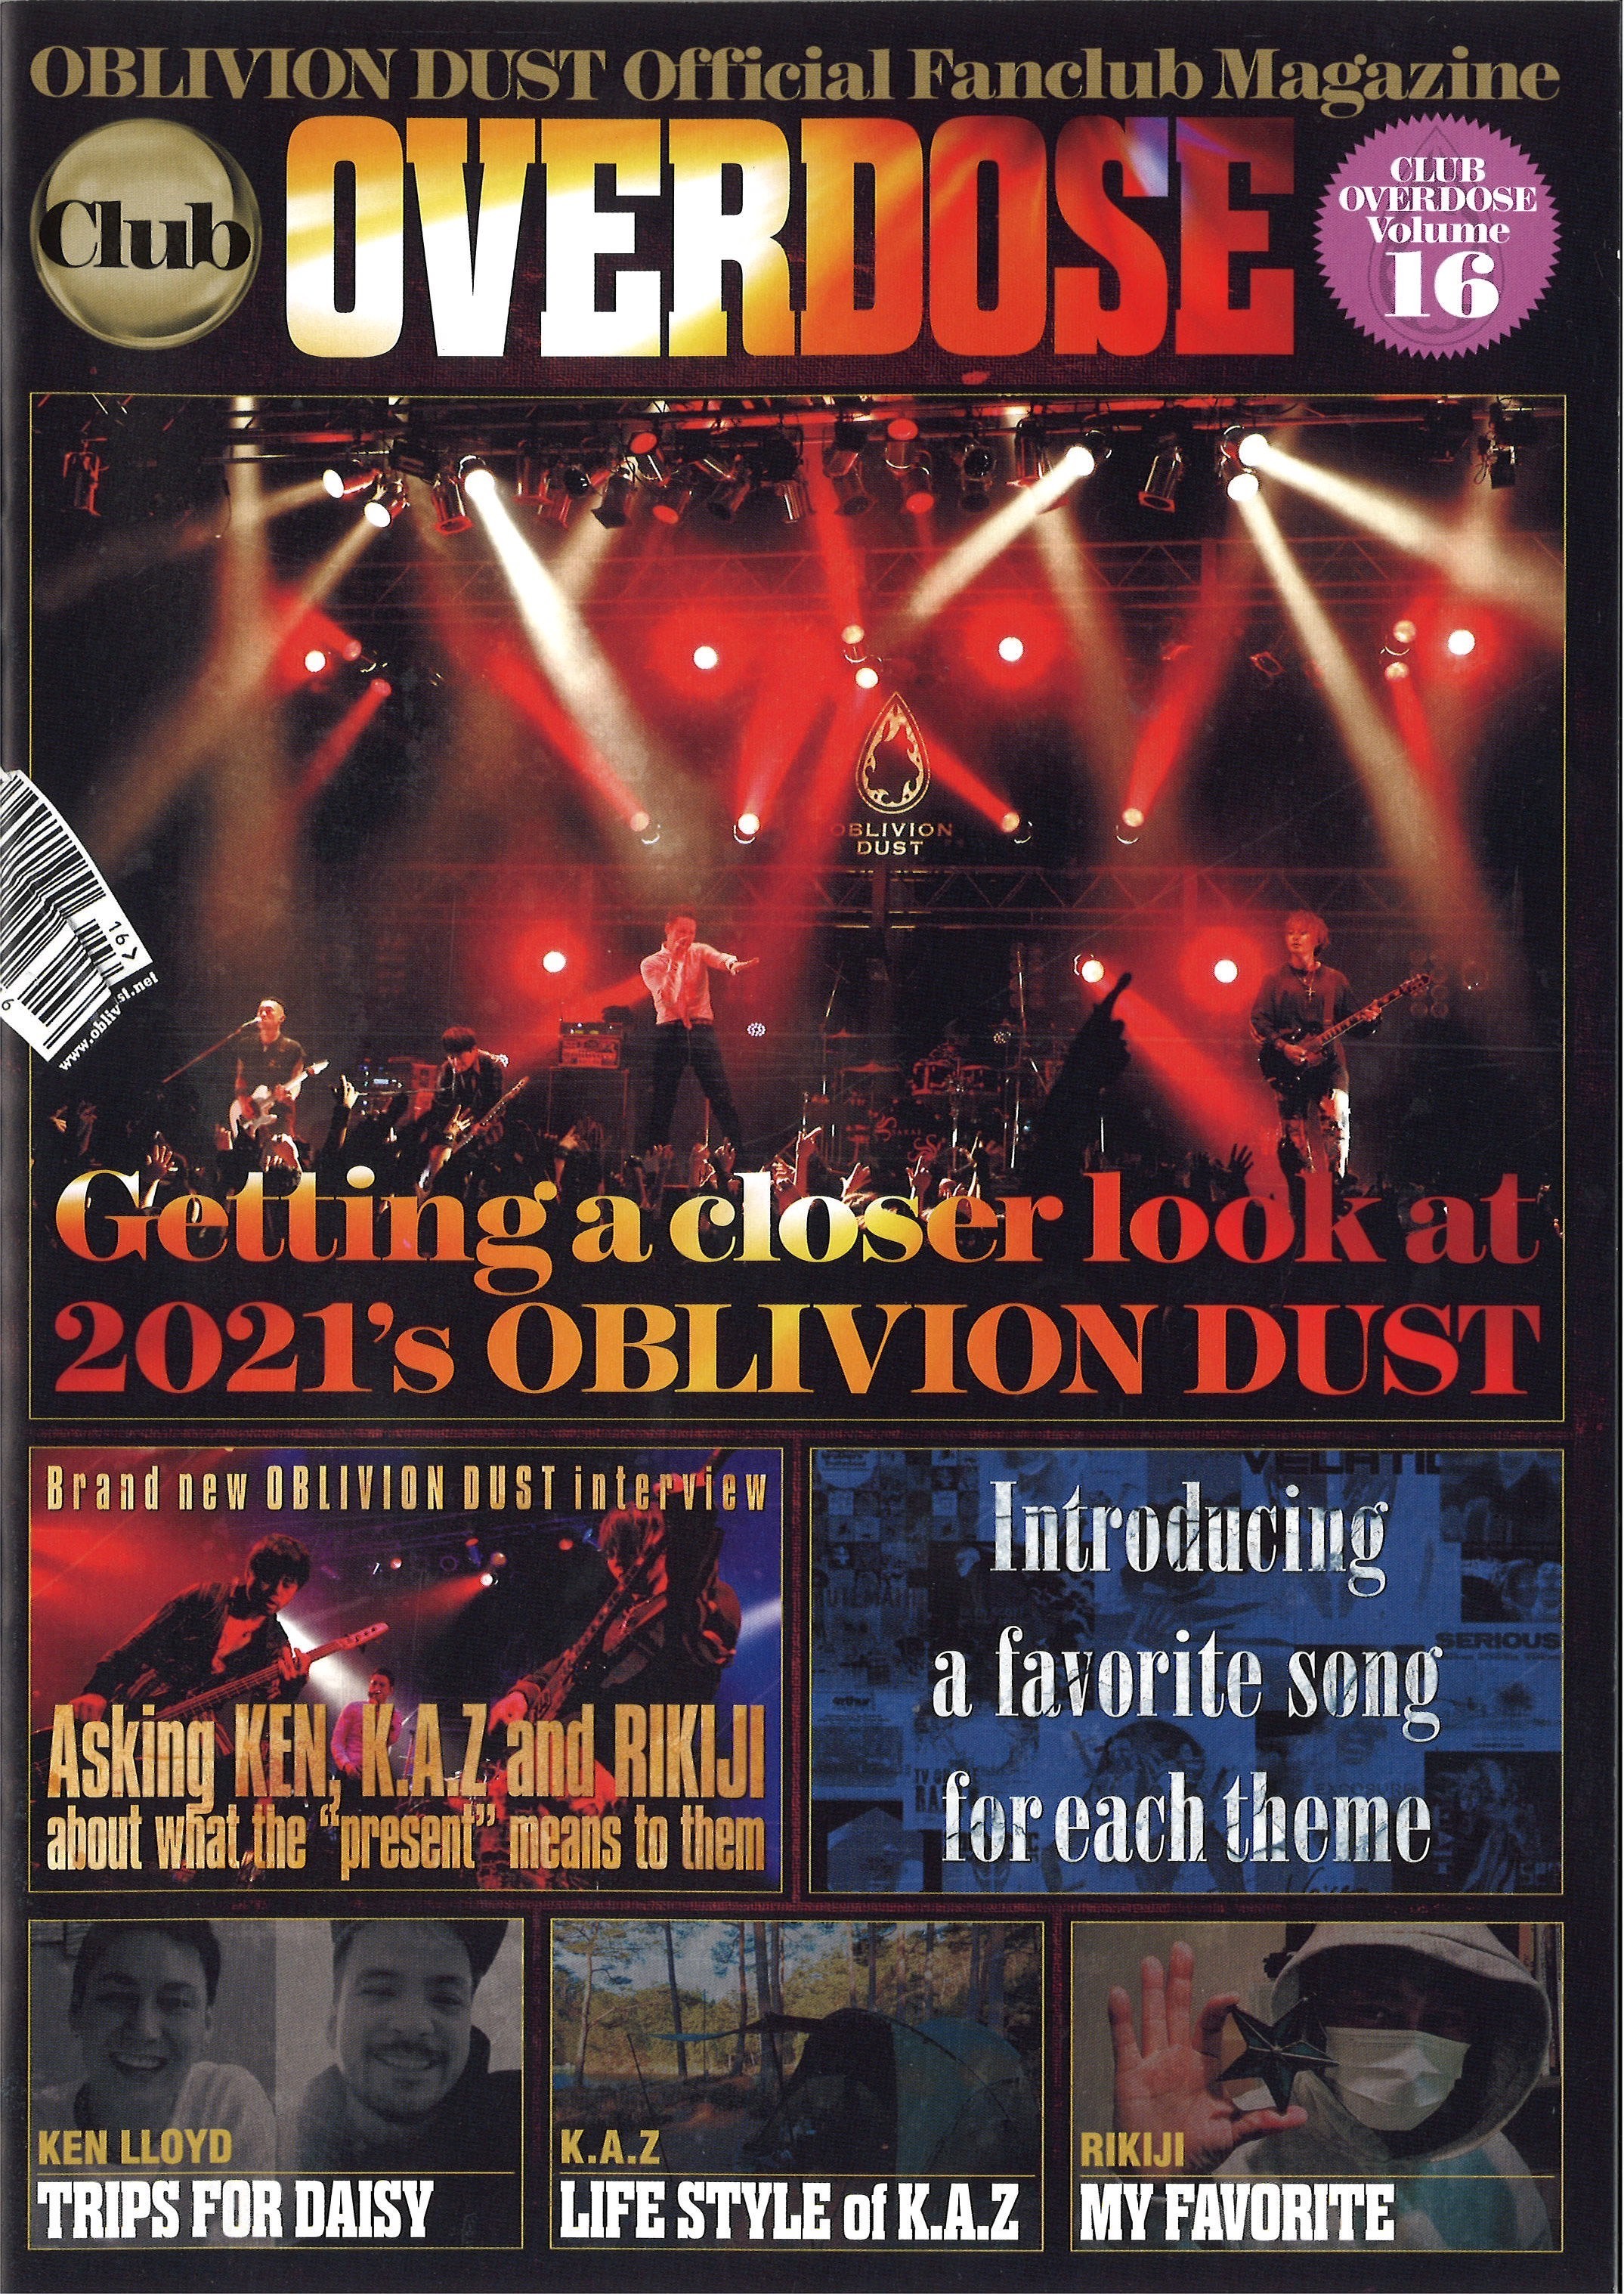 OBLIVION DUST Official Fanclub Magazine Club OVERDOSE Vol.16